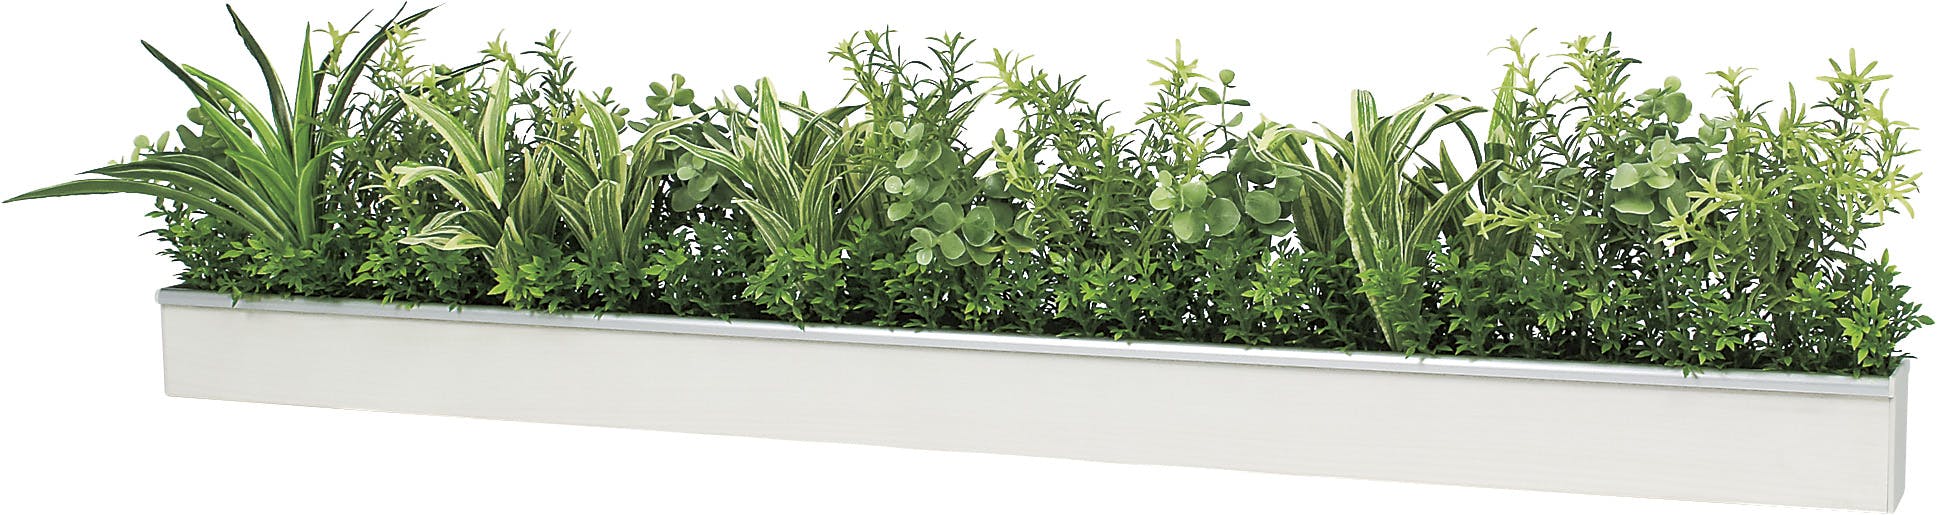 オンライン買蔵 デザインポット 人工観葉植物 フェイクグリーン GR4354 人工観葉、フェイクグリーン